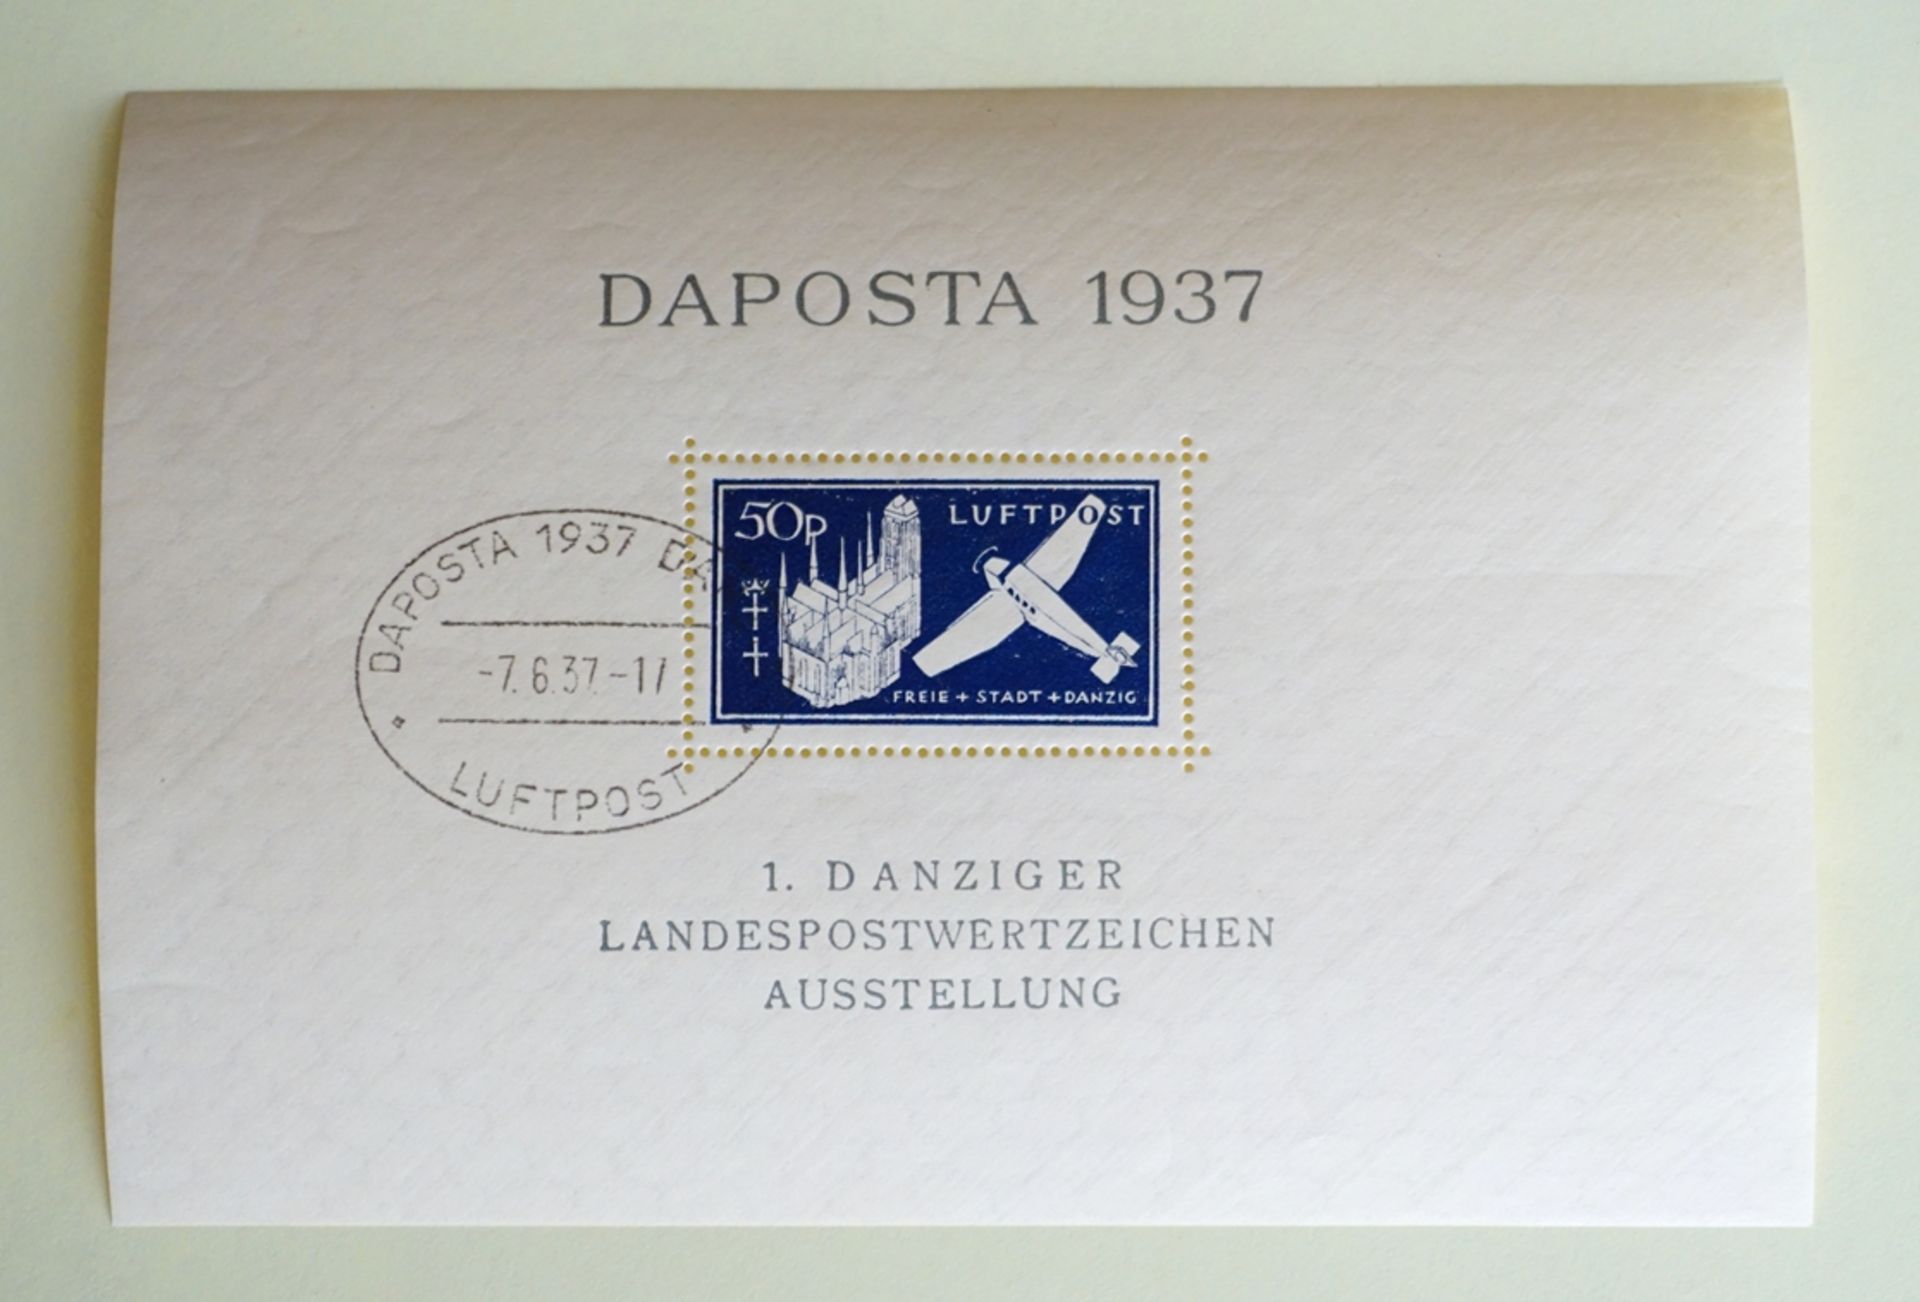 Blockausgabe Danziger Landespostwertzeichen "DAPOSTA" 2 Stück, 06.06.1937 - Bild 4 aus 5